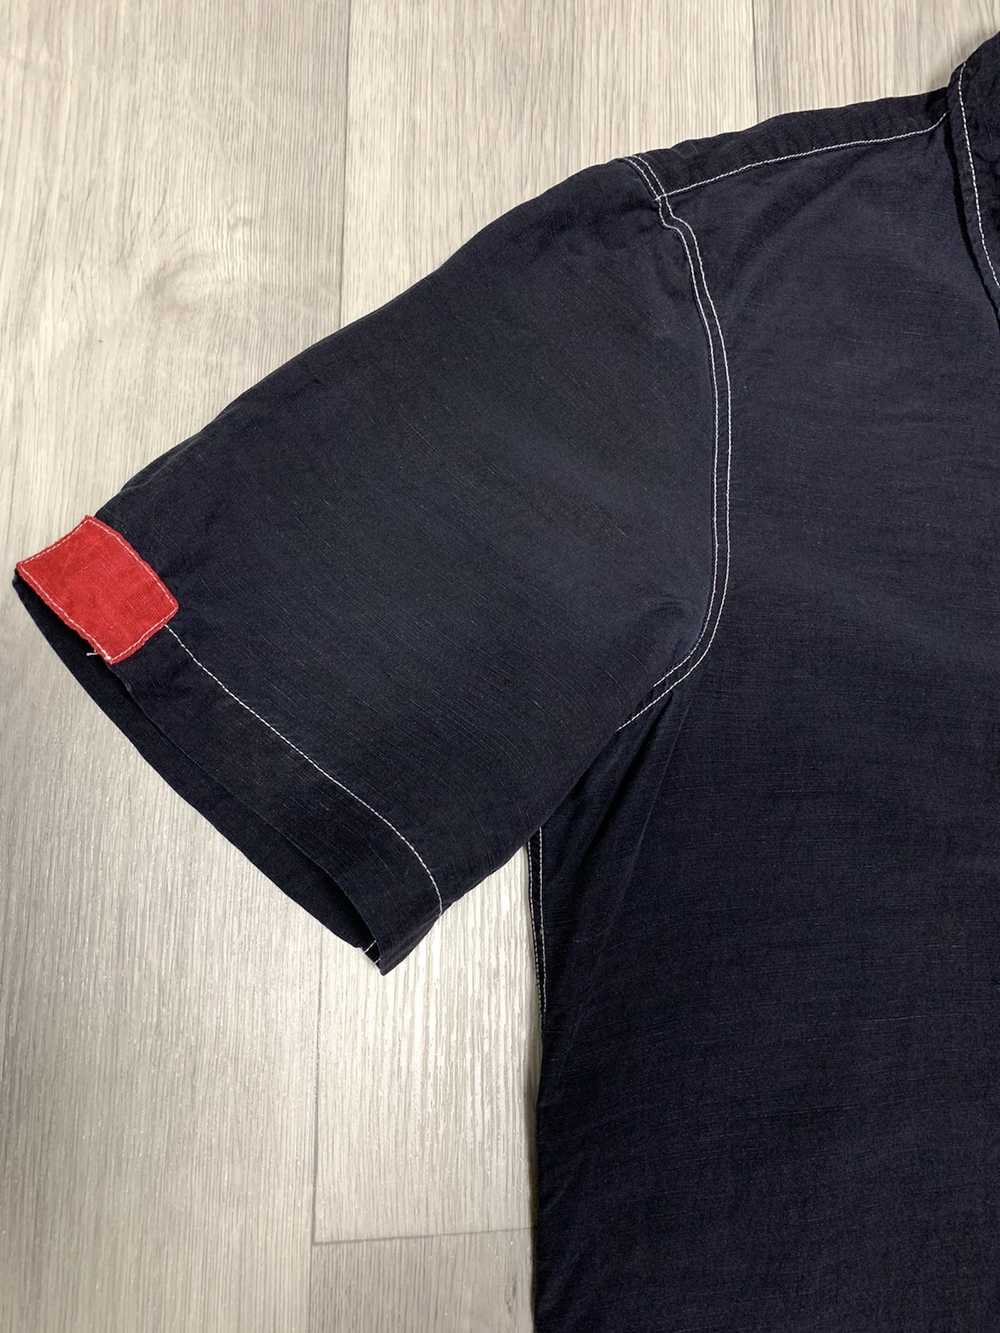 Armani × Italian Designers × Luxury Armani jeans … - image 5